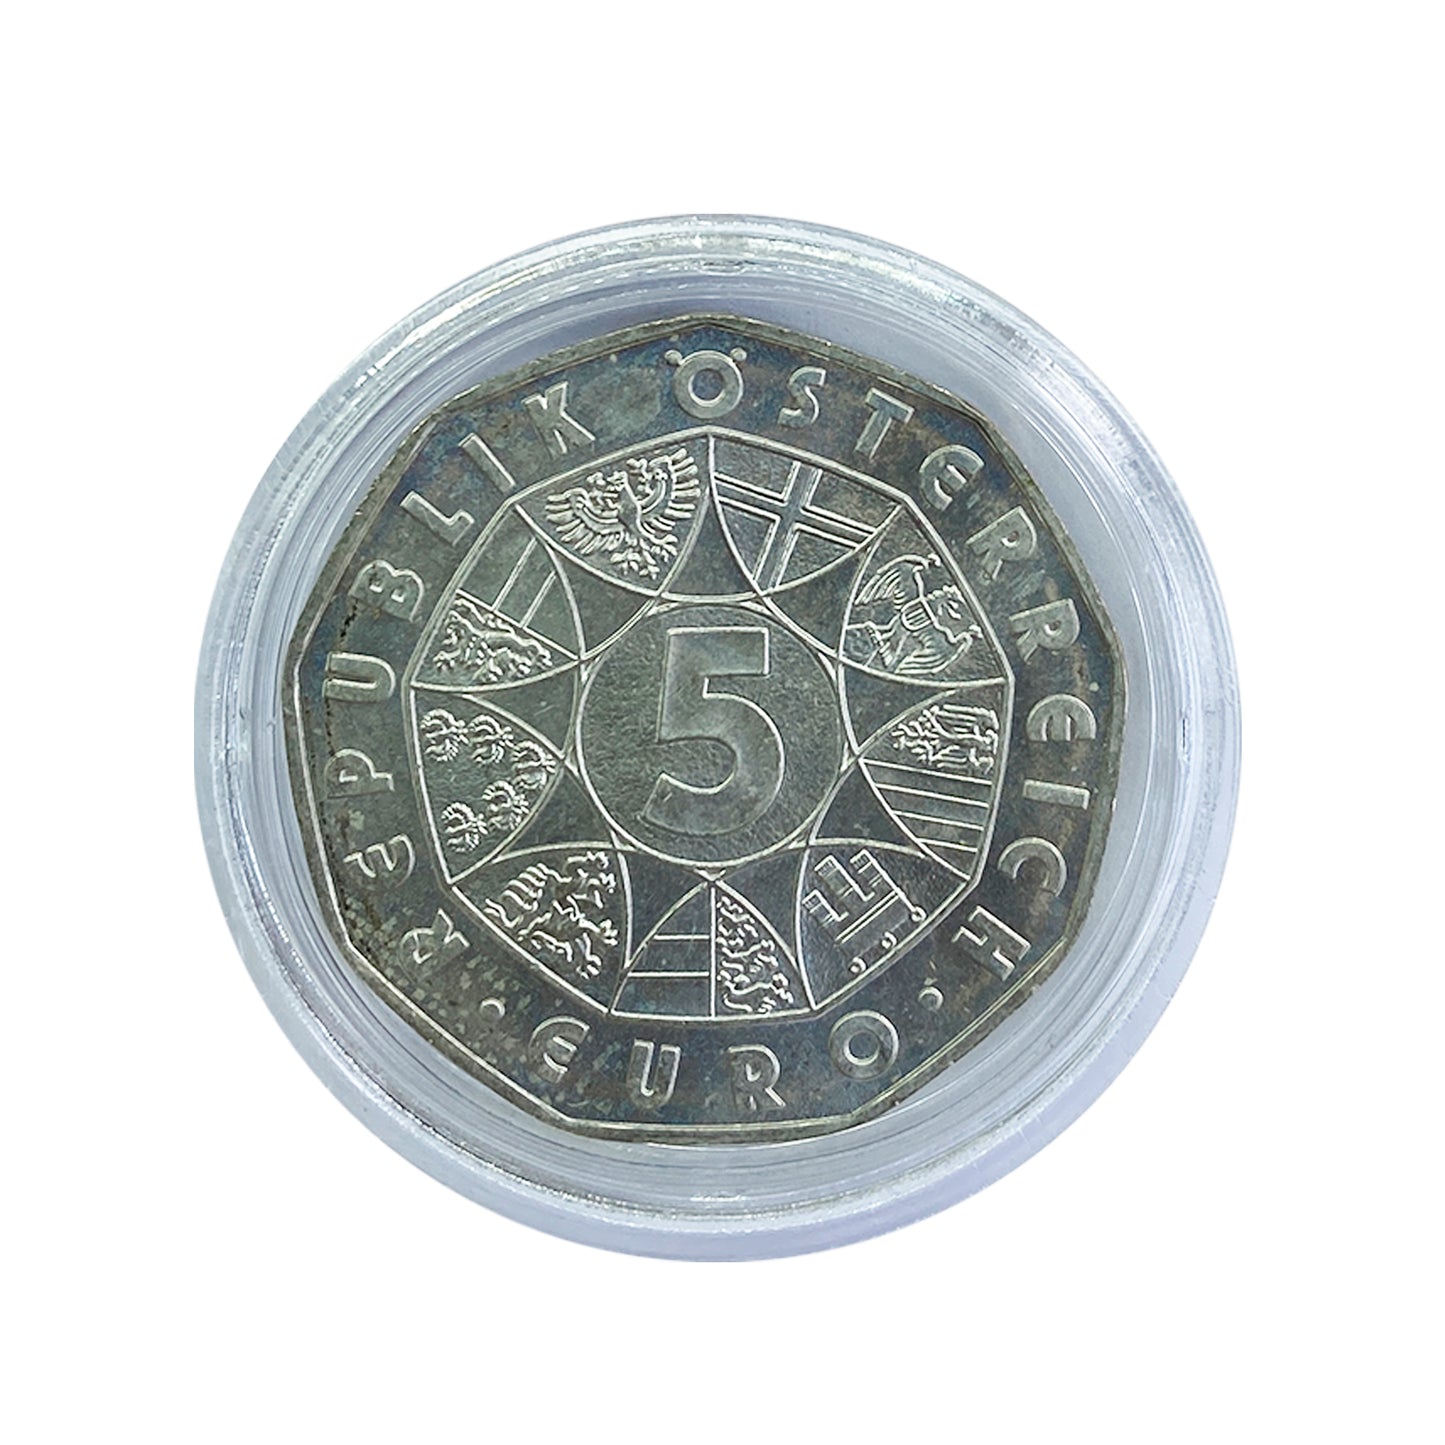 Austria - Moneda 5 euros plata 2003 - Energía Hidráulica